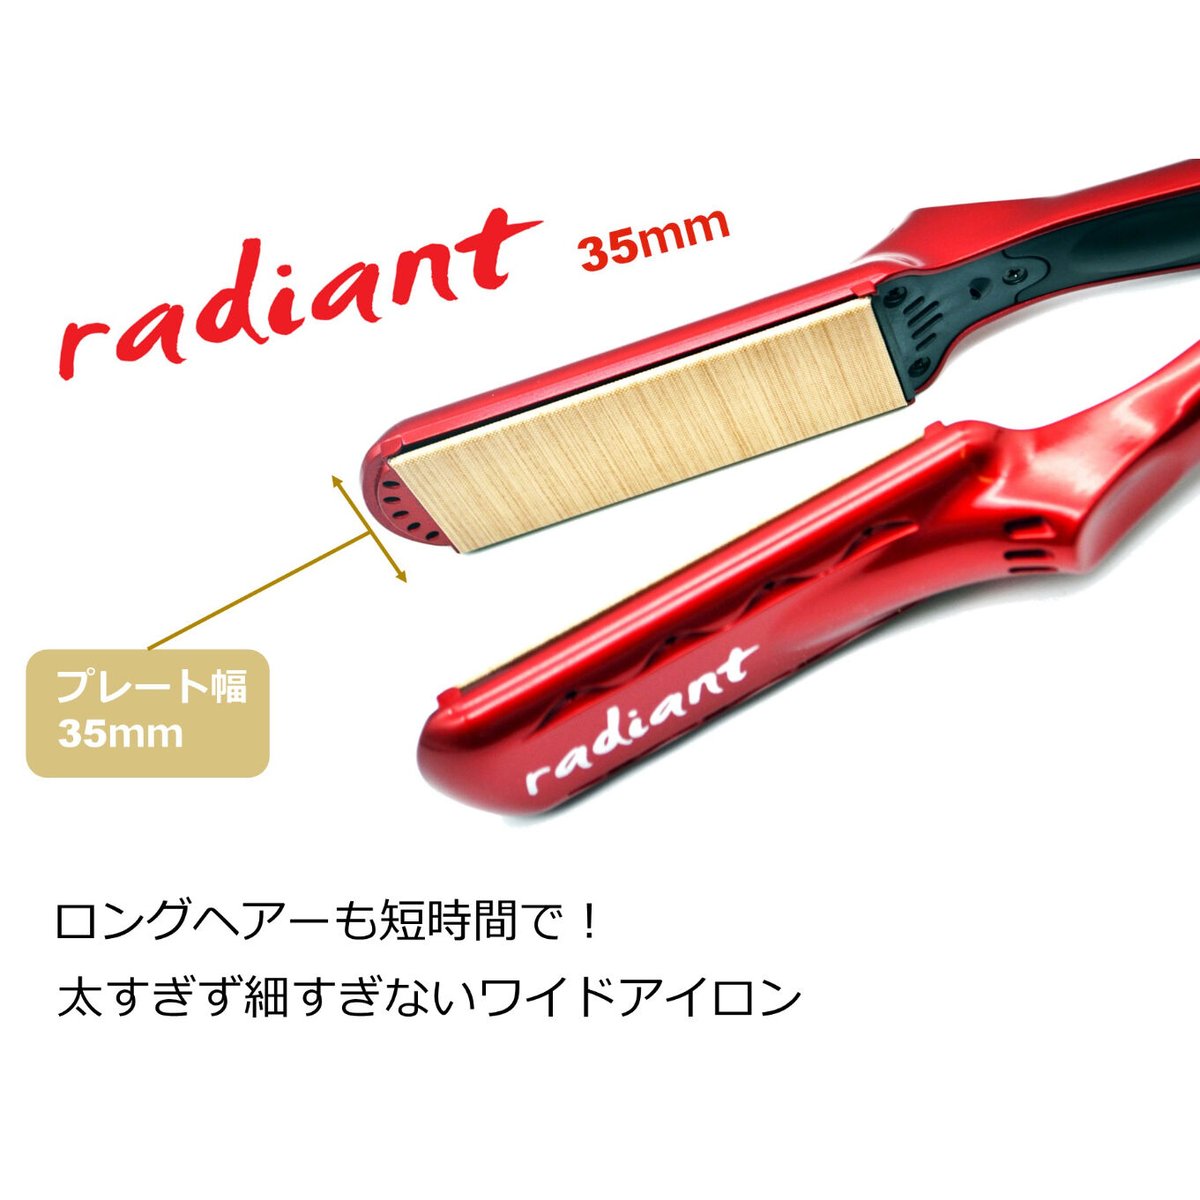 シルクプロアイロン radiant 35mm | B next official online